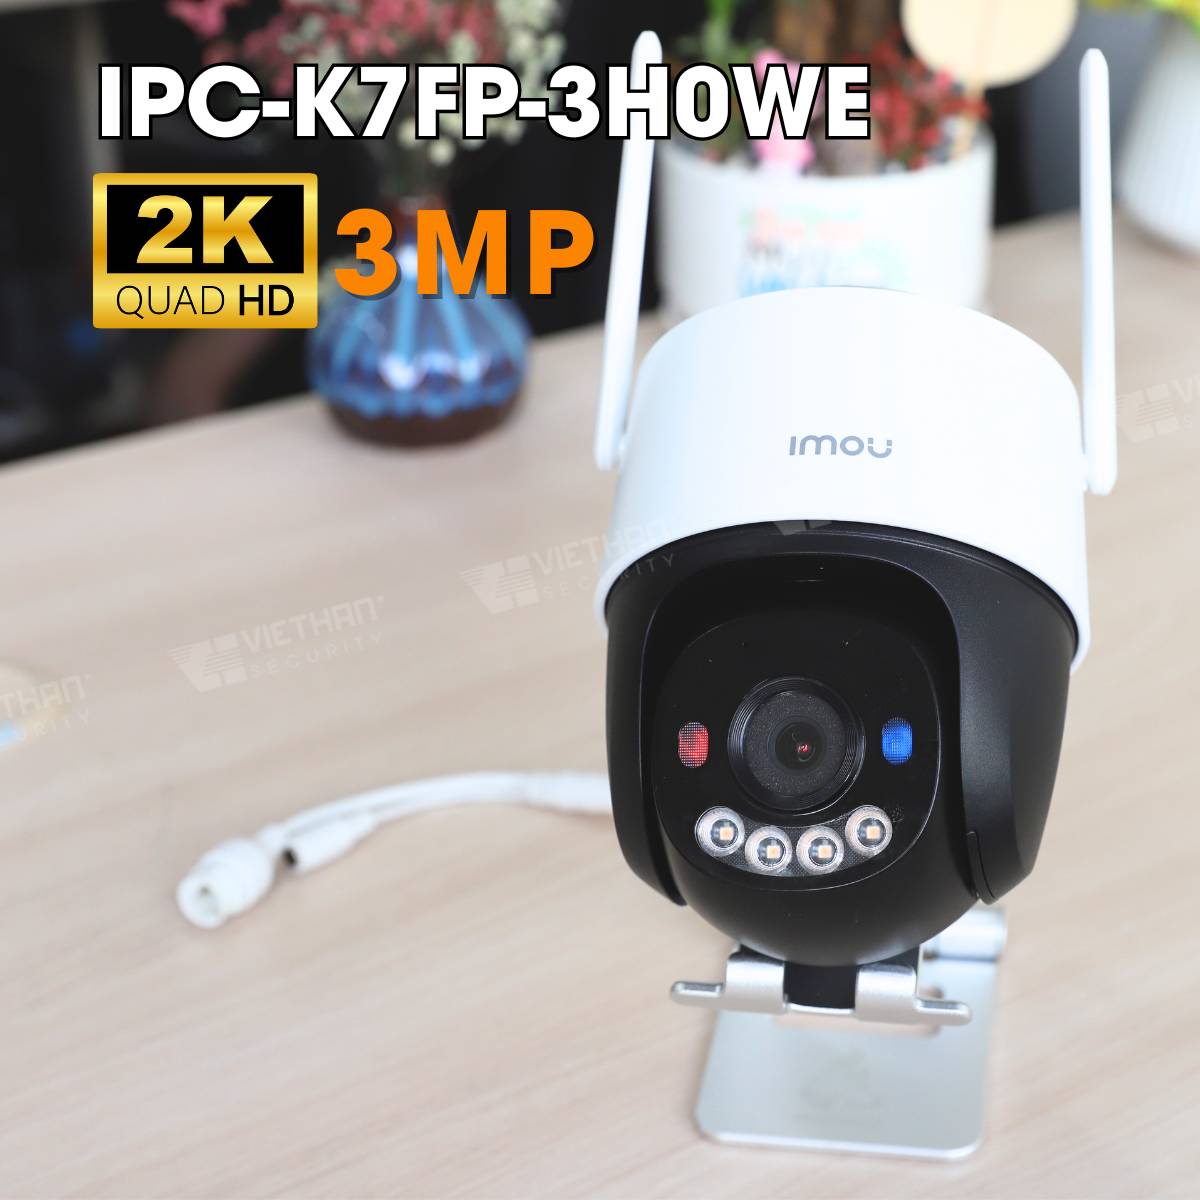 Camera Cruiser SC IMOU IPC-K7FP-3H0WE 2K 3MP, đèn cảnh báo xanh + đỏ, đàm thoại 2 chiều, hồng ngoại thông minh 20m